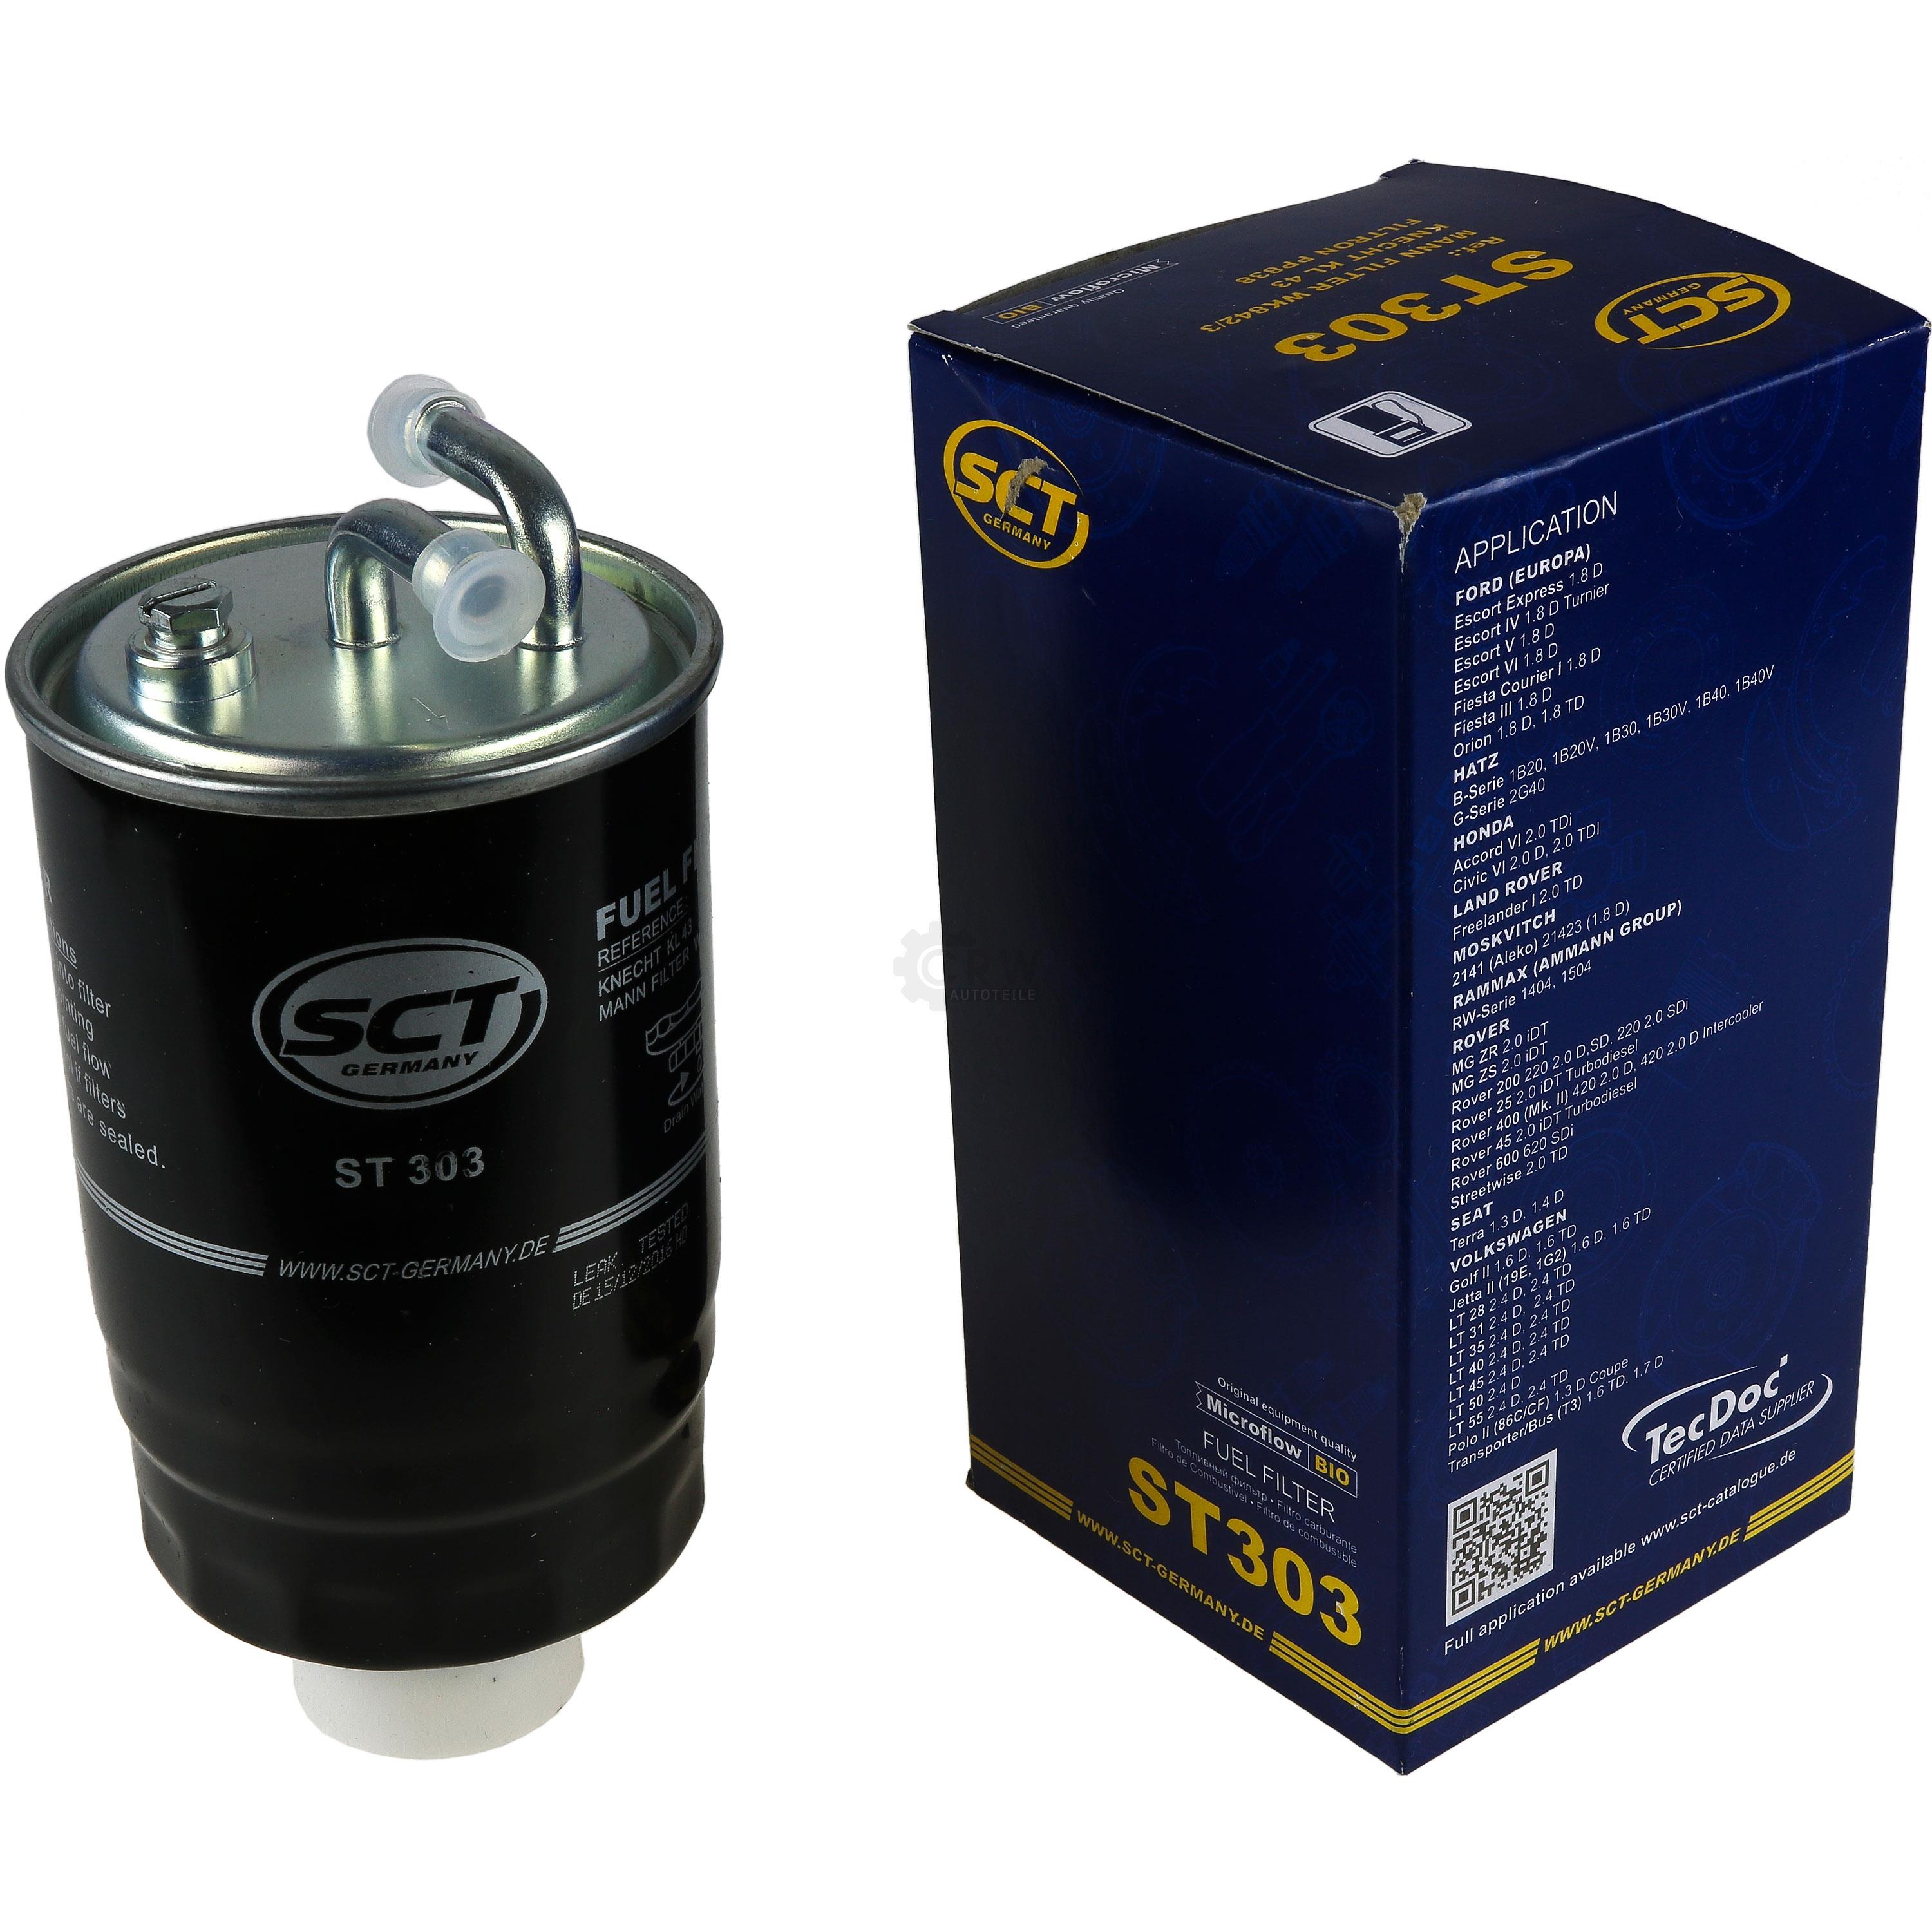 SCT Kraftstofffilter ST 303 Fuel Filter